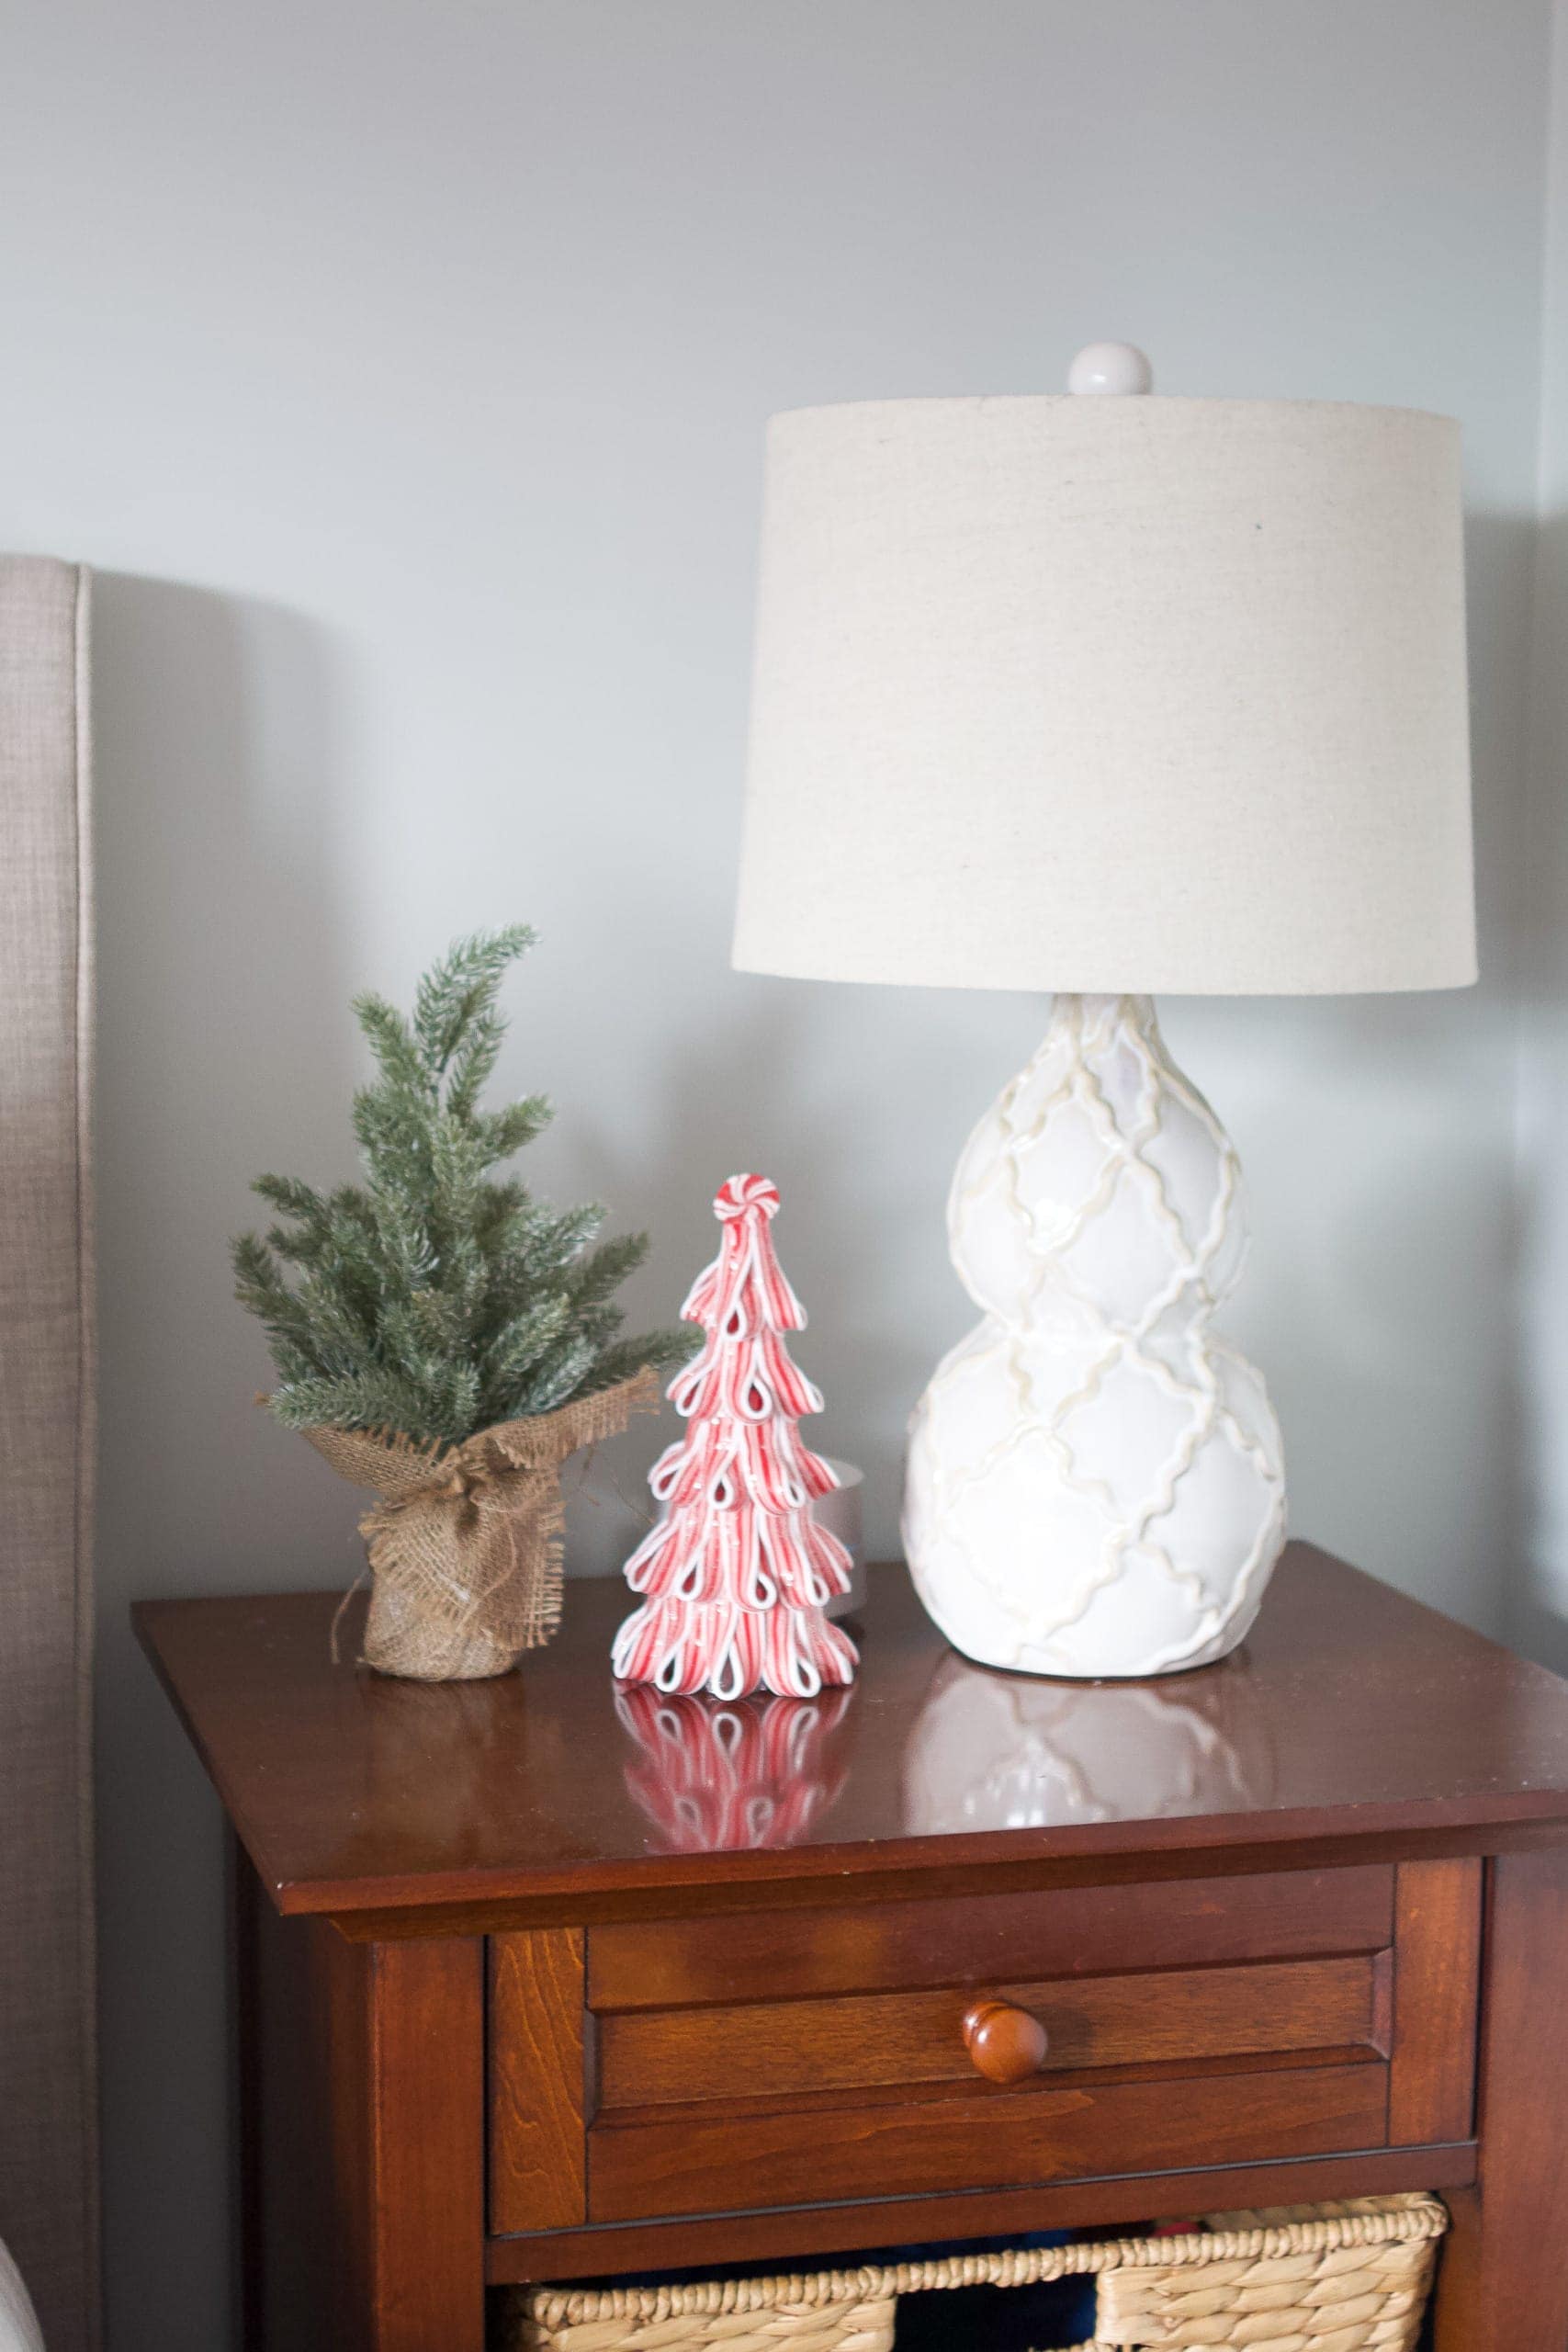 Adding Christmas decor to your nightstand